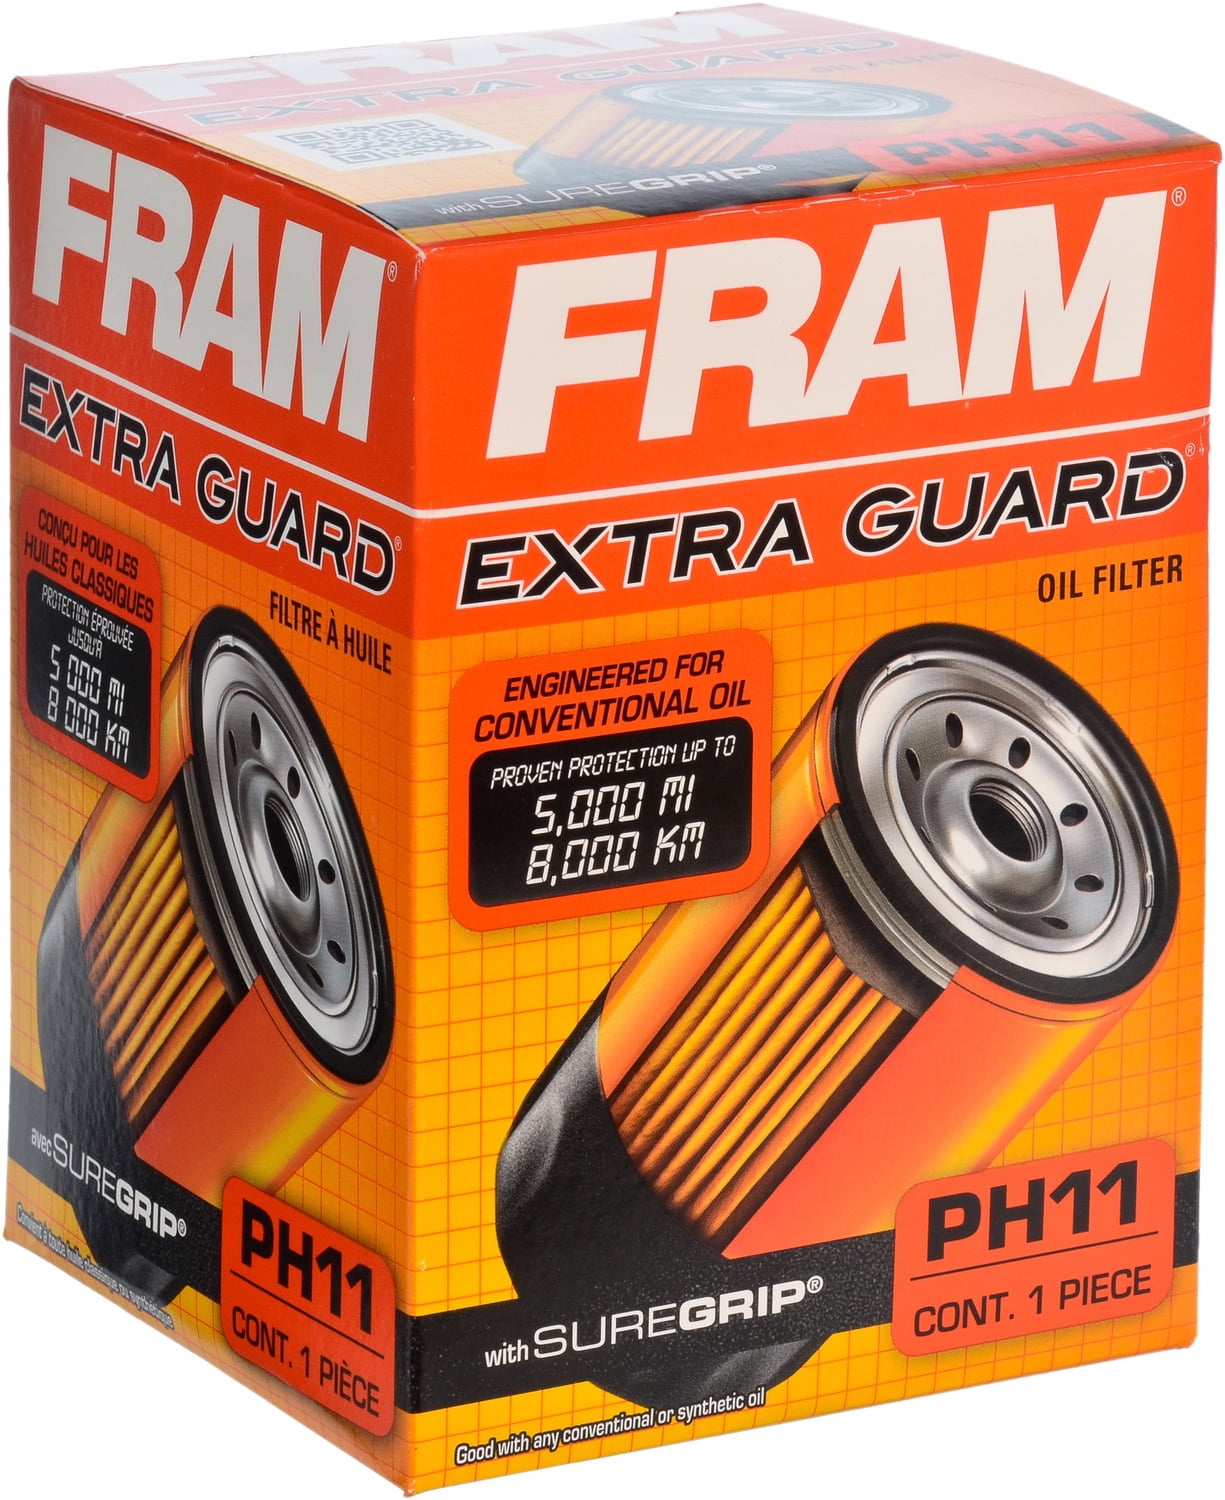 FRAM Extra Guard Oil Filter PH11 Walmart